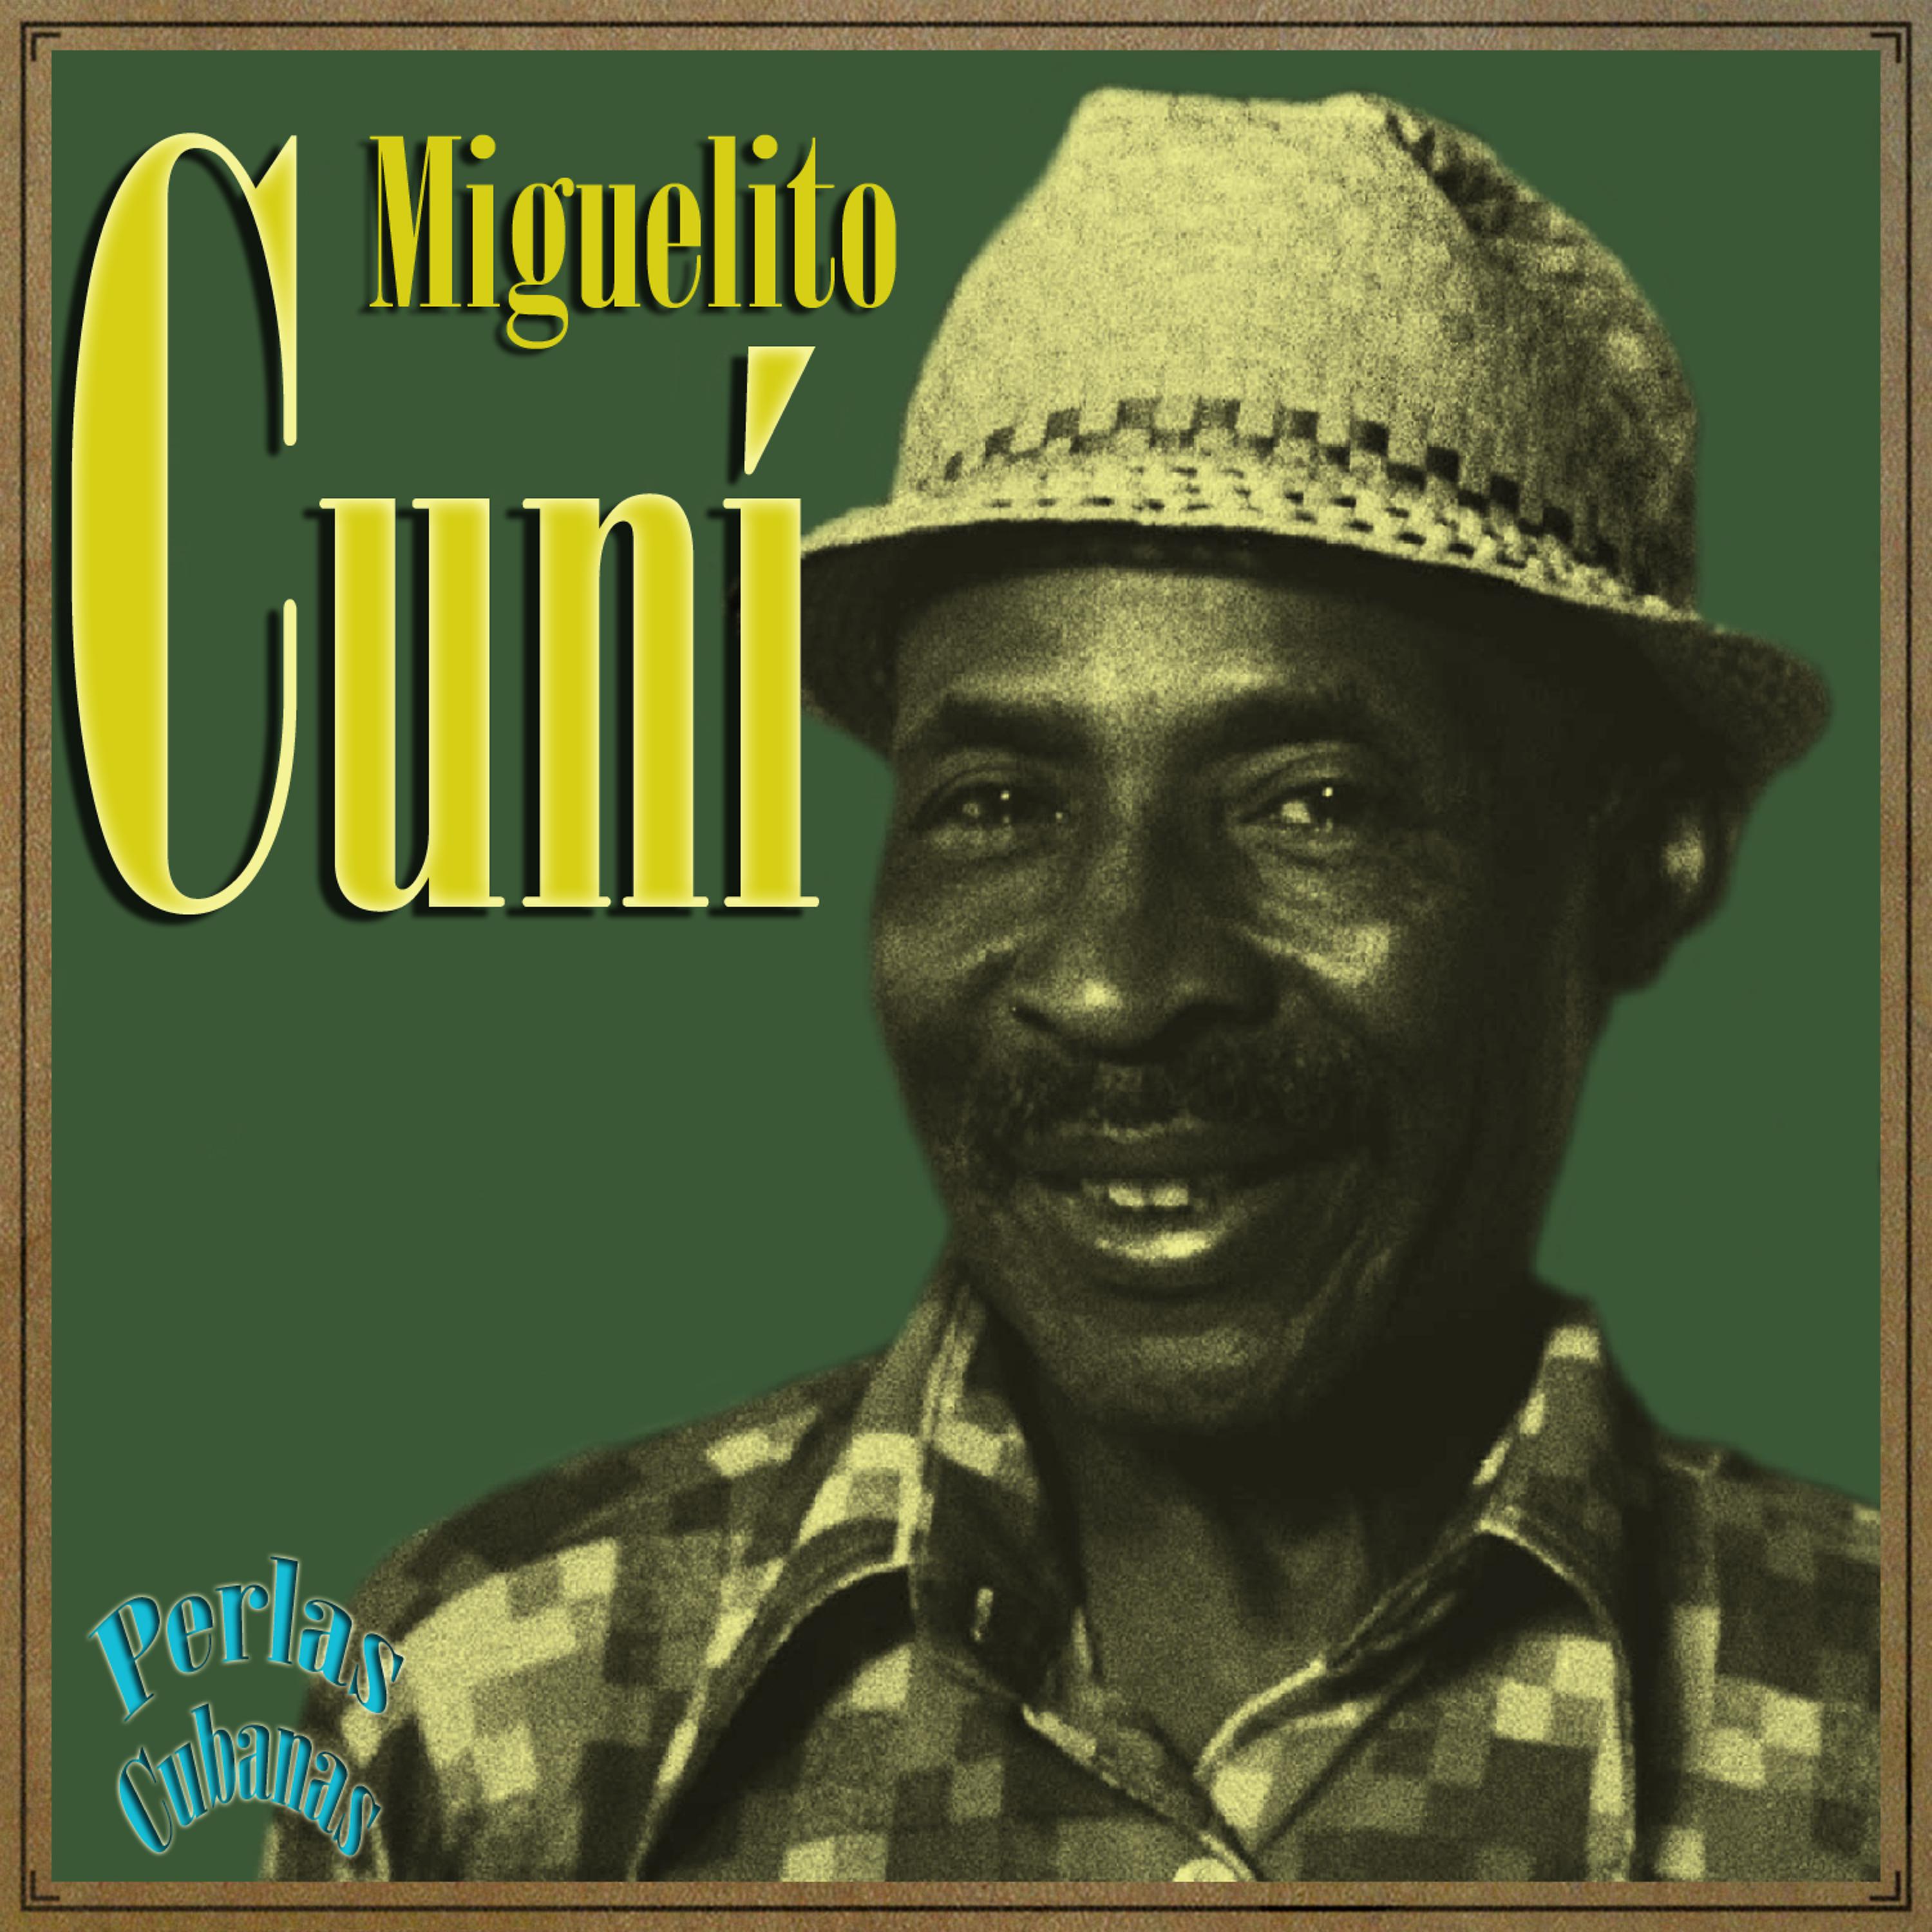 Постер альбома Perlas Cubanas: Miguelito Cuní